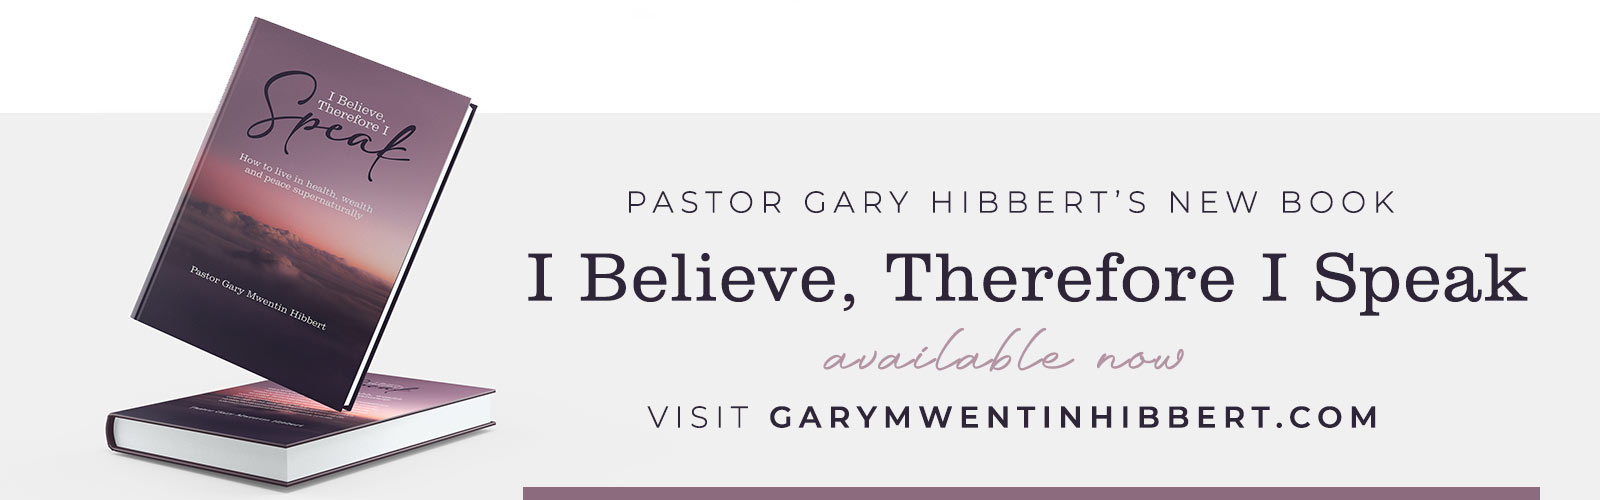 Pastor Gary Hibbert's new book, I Believe, Therefore I Speak. 